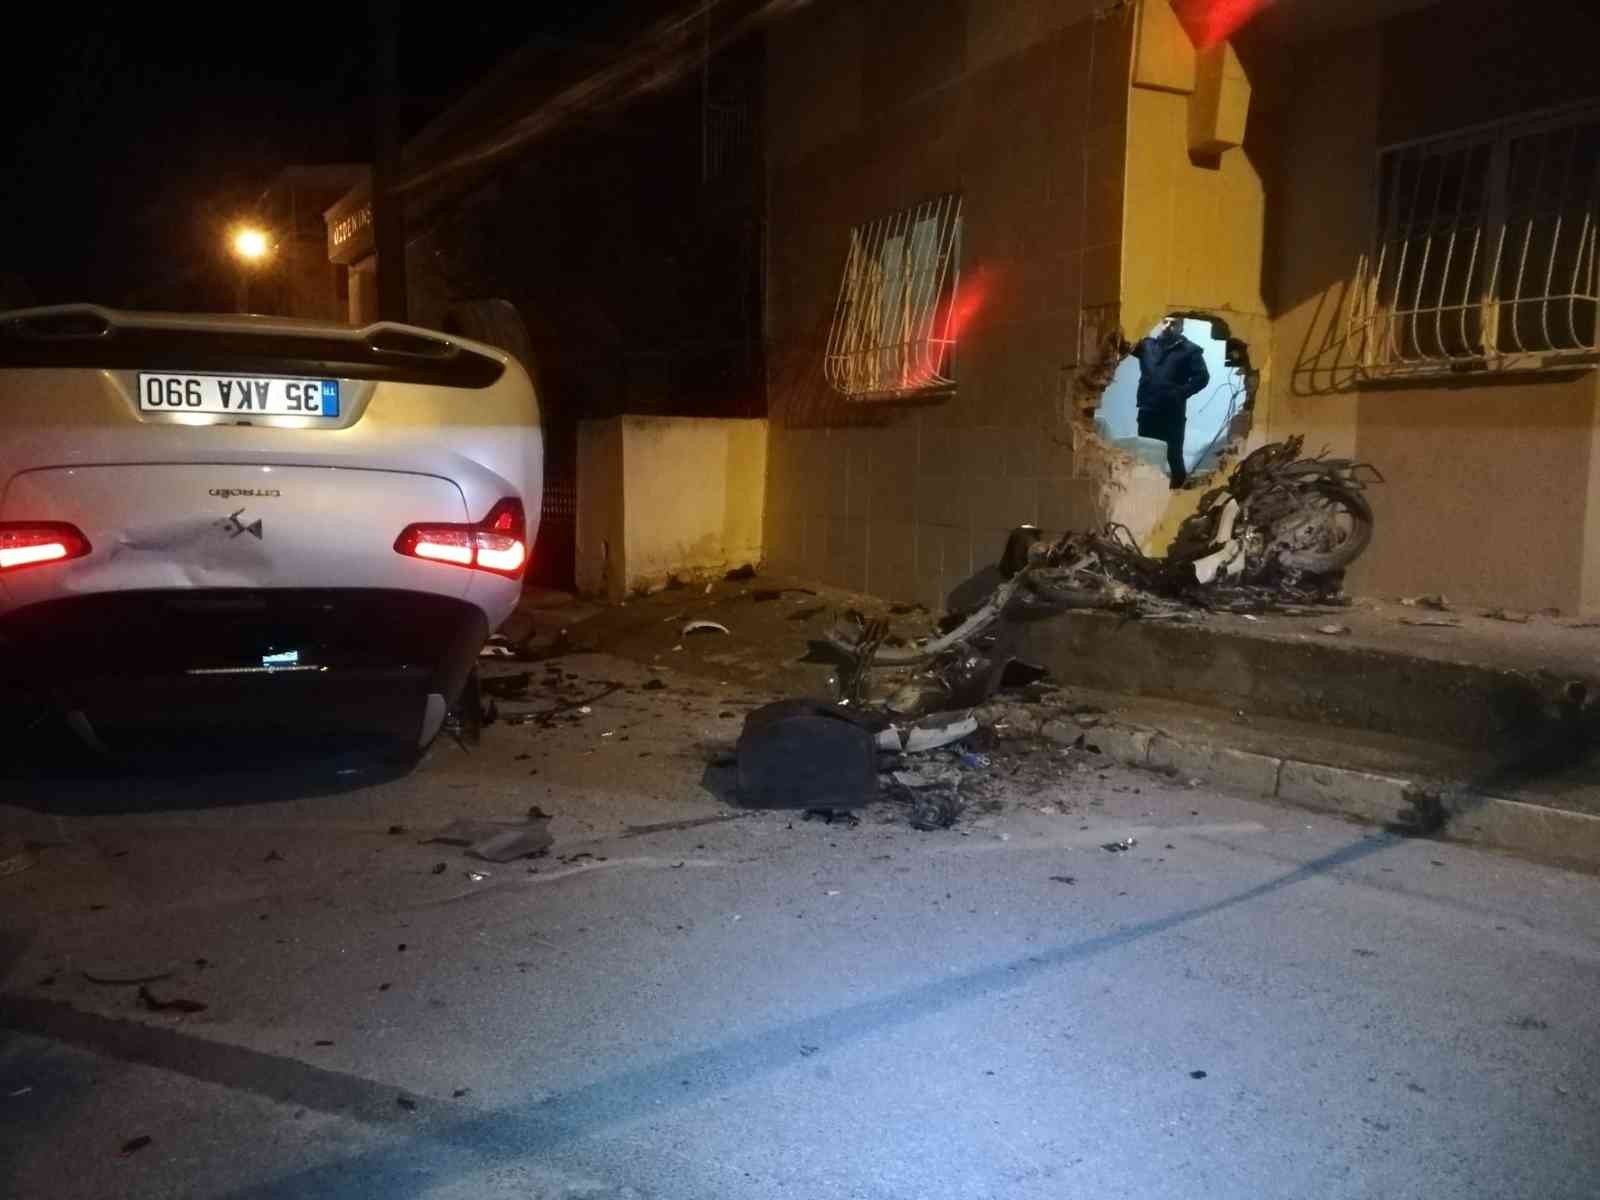 İzmir’de film sahnelerini aratmayan kovalamaca: İş yeri sahibi kovaladığı motosiklet hırsızı zanlısına otomobille çaptı: 1 ölü, 2 yaralı #izmir